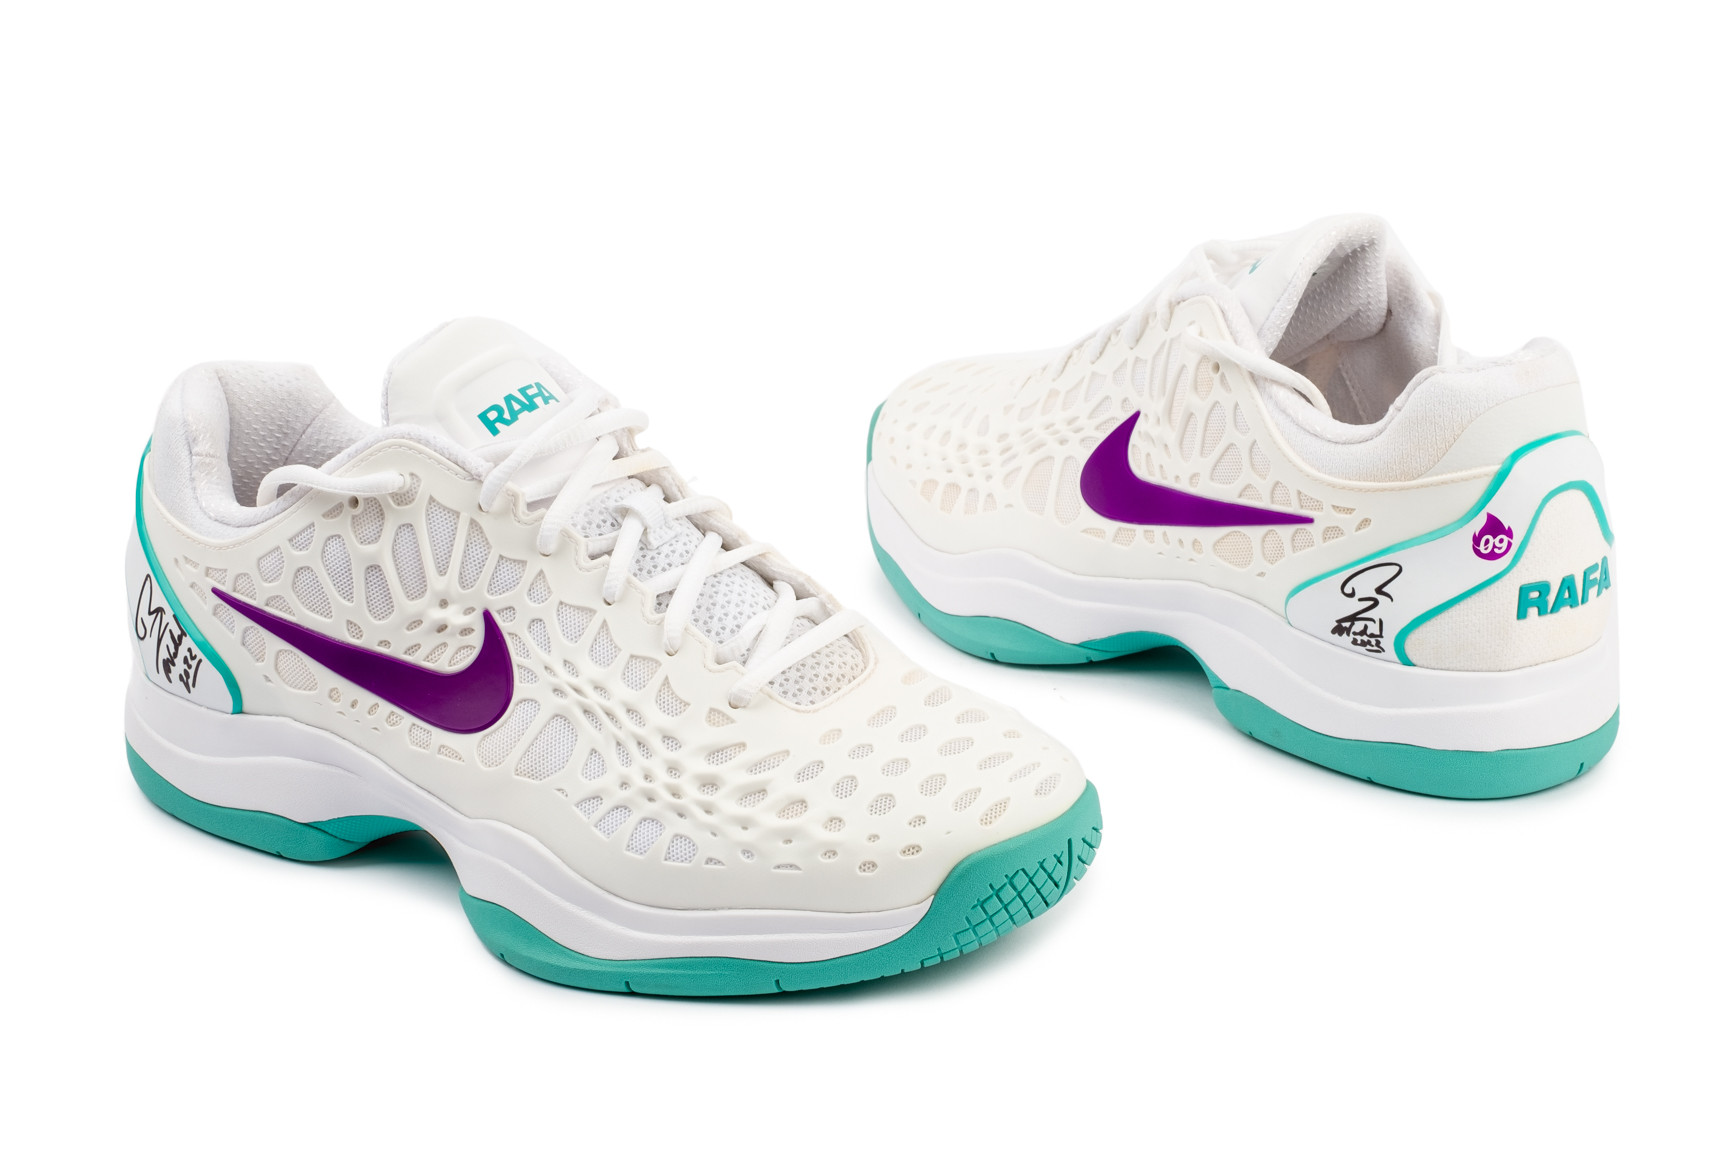 Nike donadas por Rafa Nadal